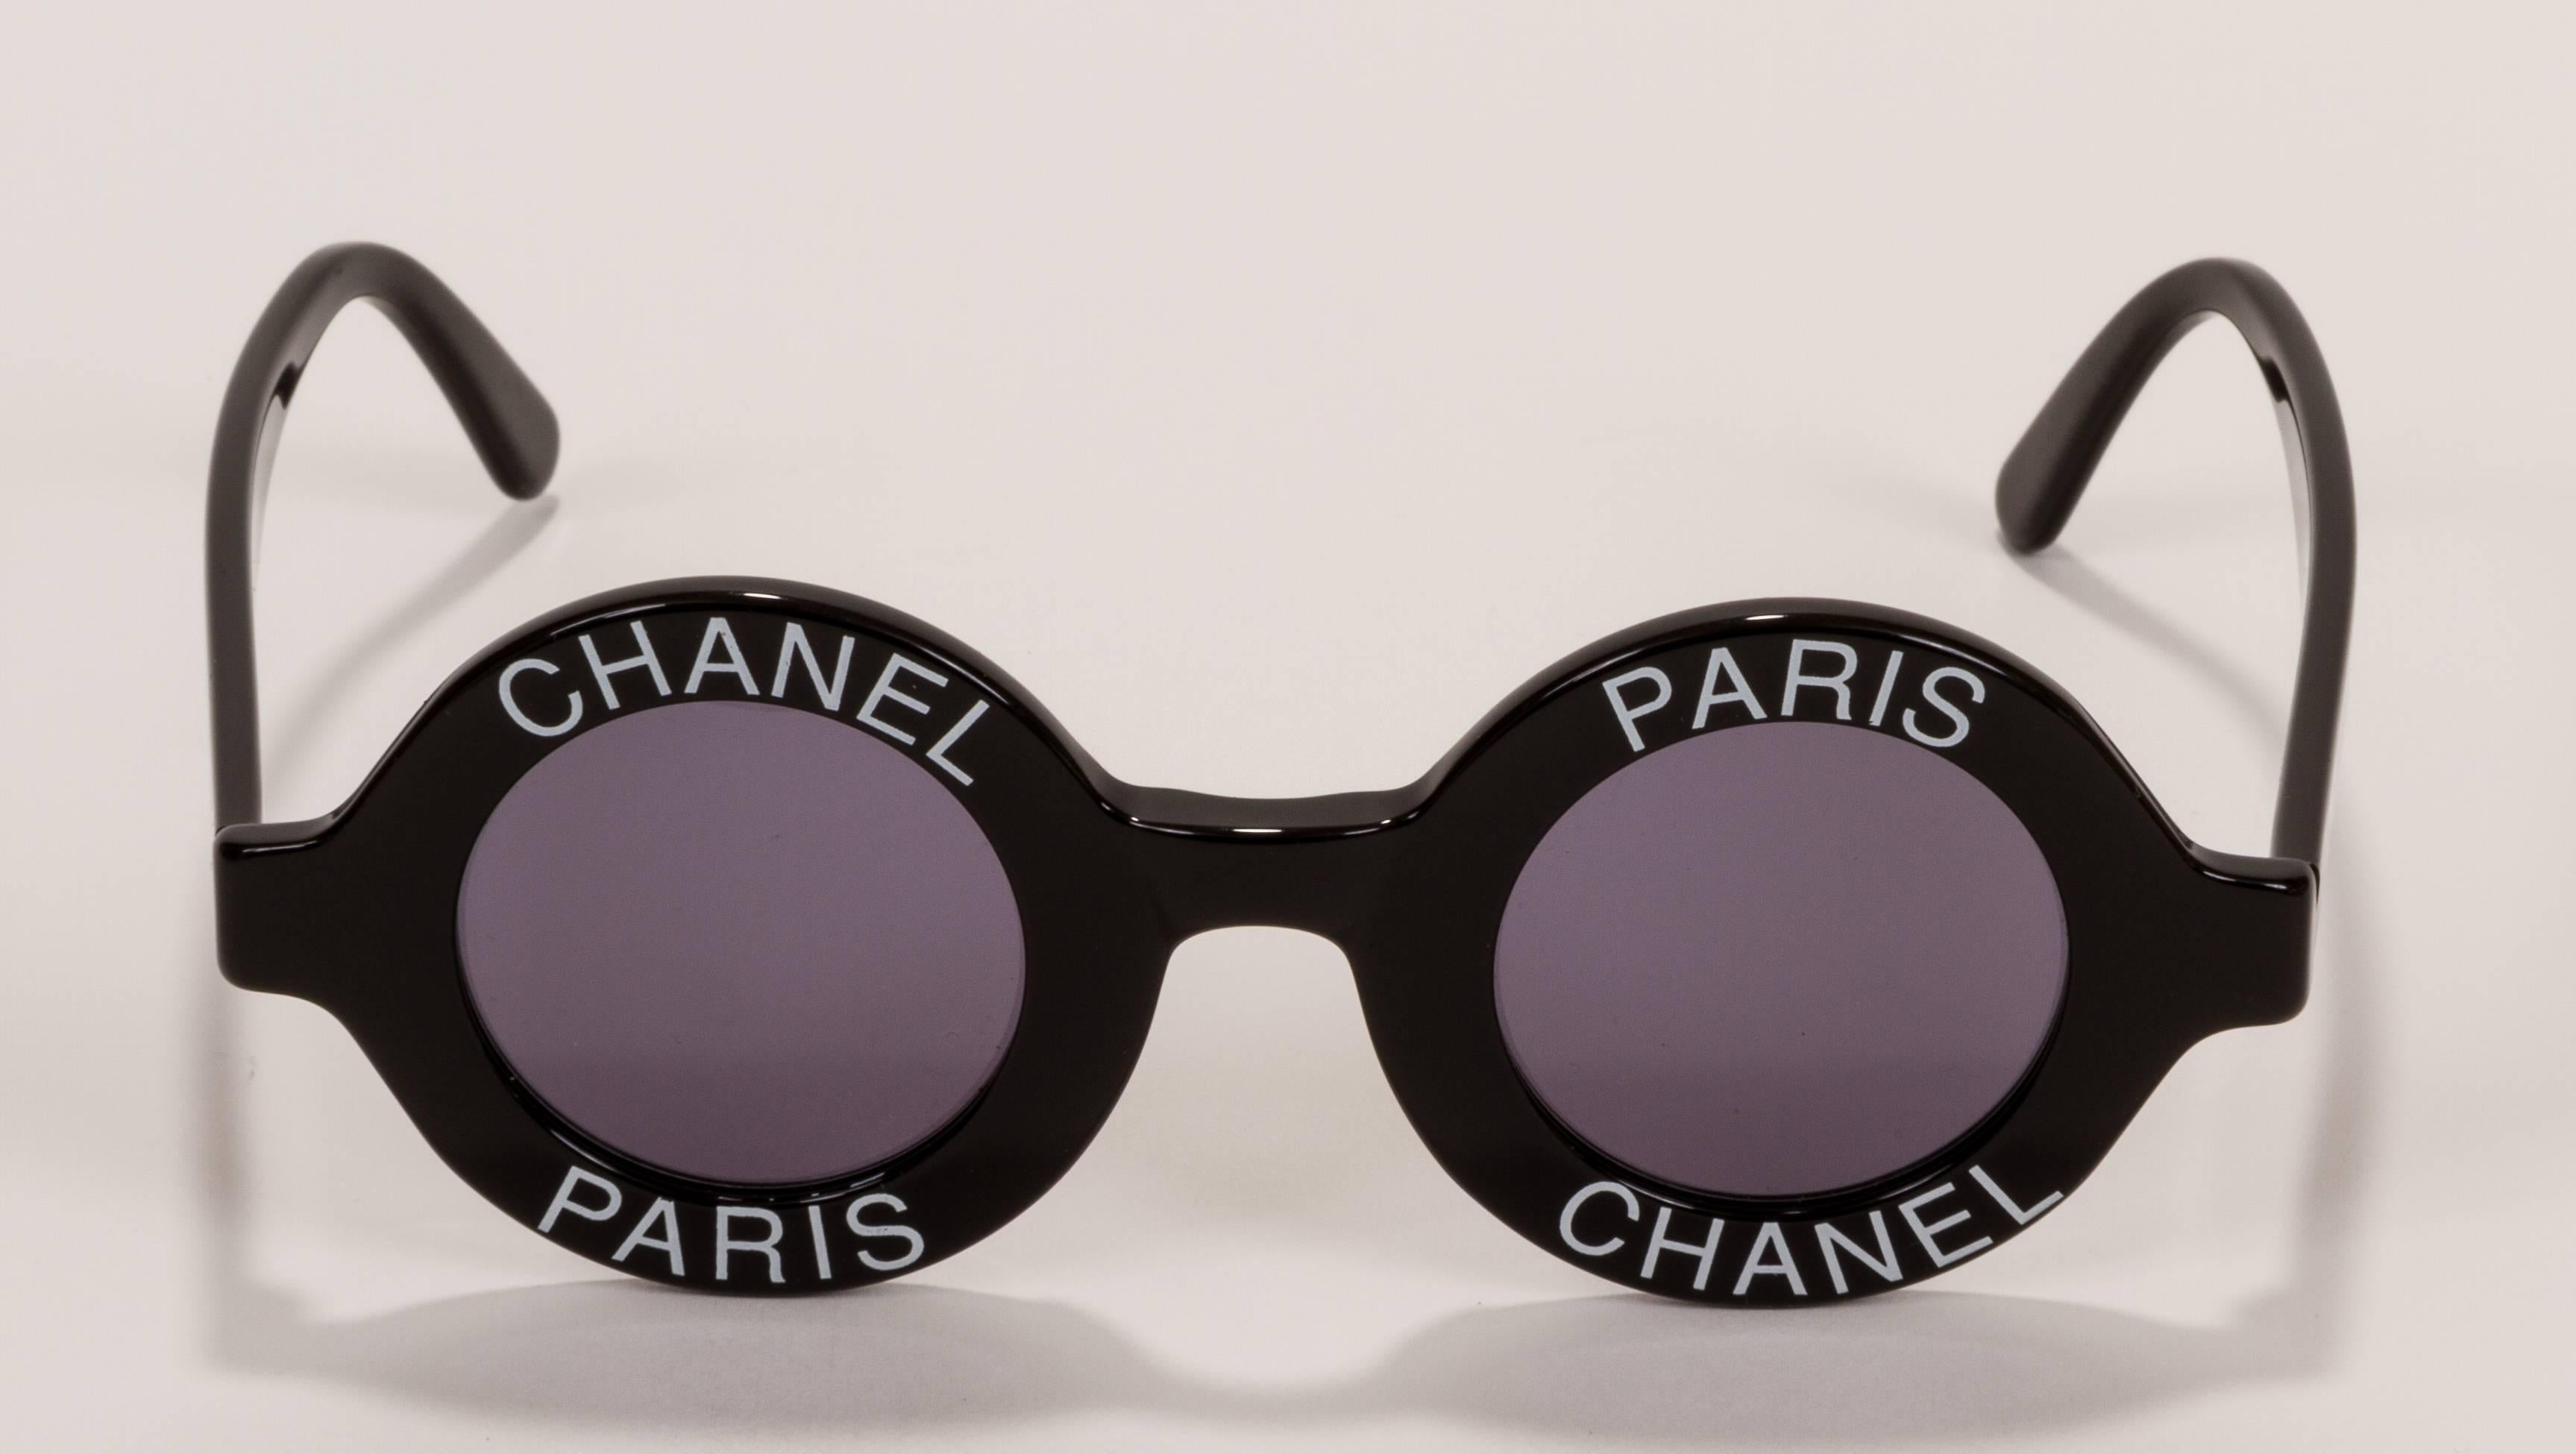 Schwarze und weiße runde Sonnenbrille von Chanel aus den späten 1980er Jahren. Kommt mit original Chanel-Box und Stoff-Etui. Leichte Kratzer an Rahmen und Gläsern.